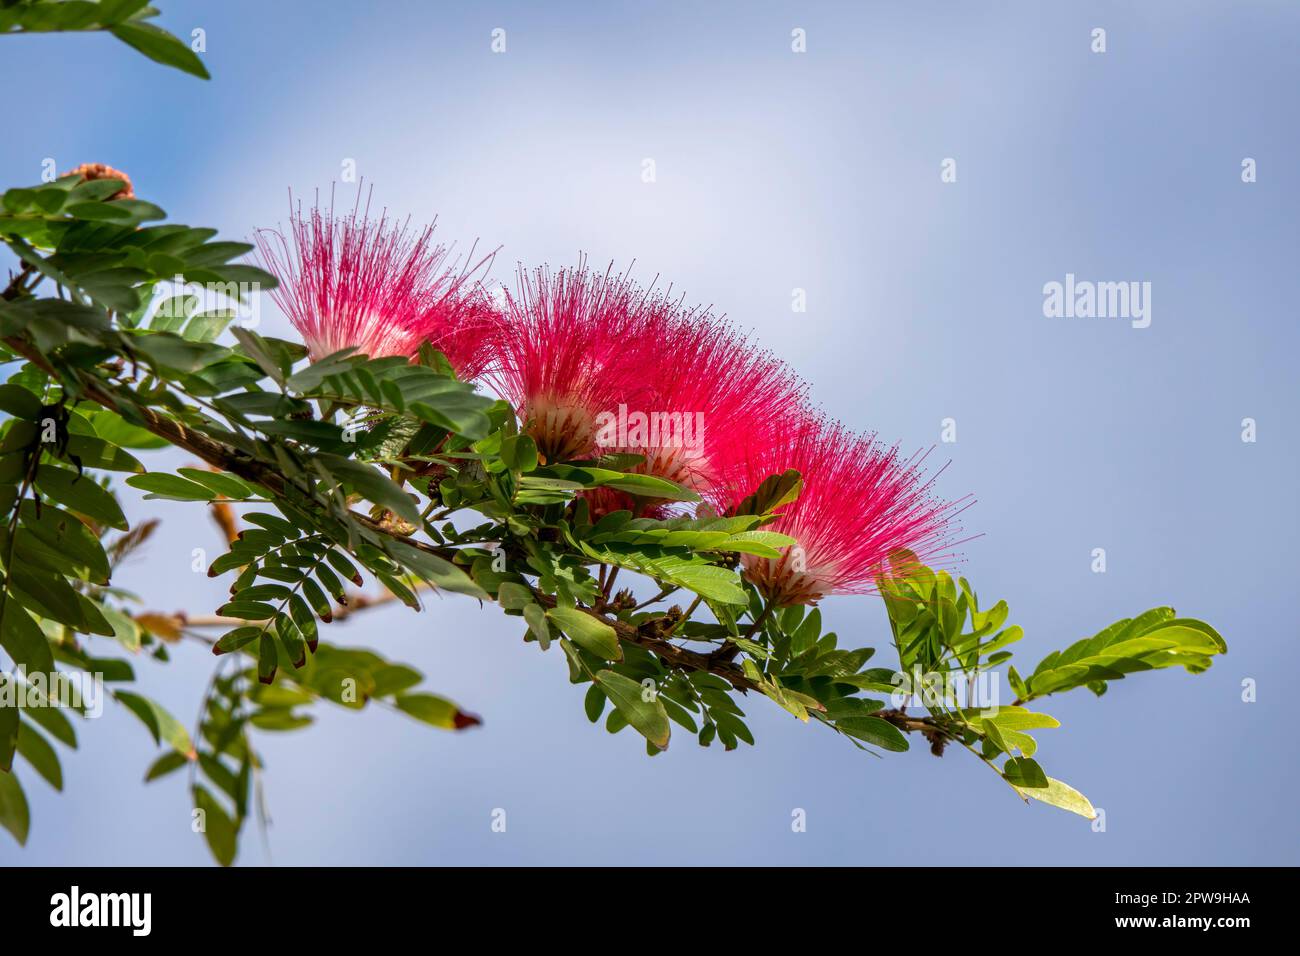 Rosafarbene zarte Blumen des blühenden persischen Seidenbaums oder Albizia julibrissin in der Nähe von grünen Blättern auf verschwommenem Hintergrund Stockfoto